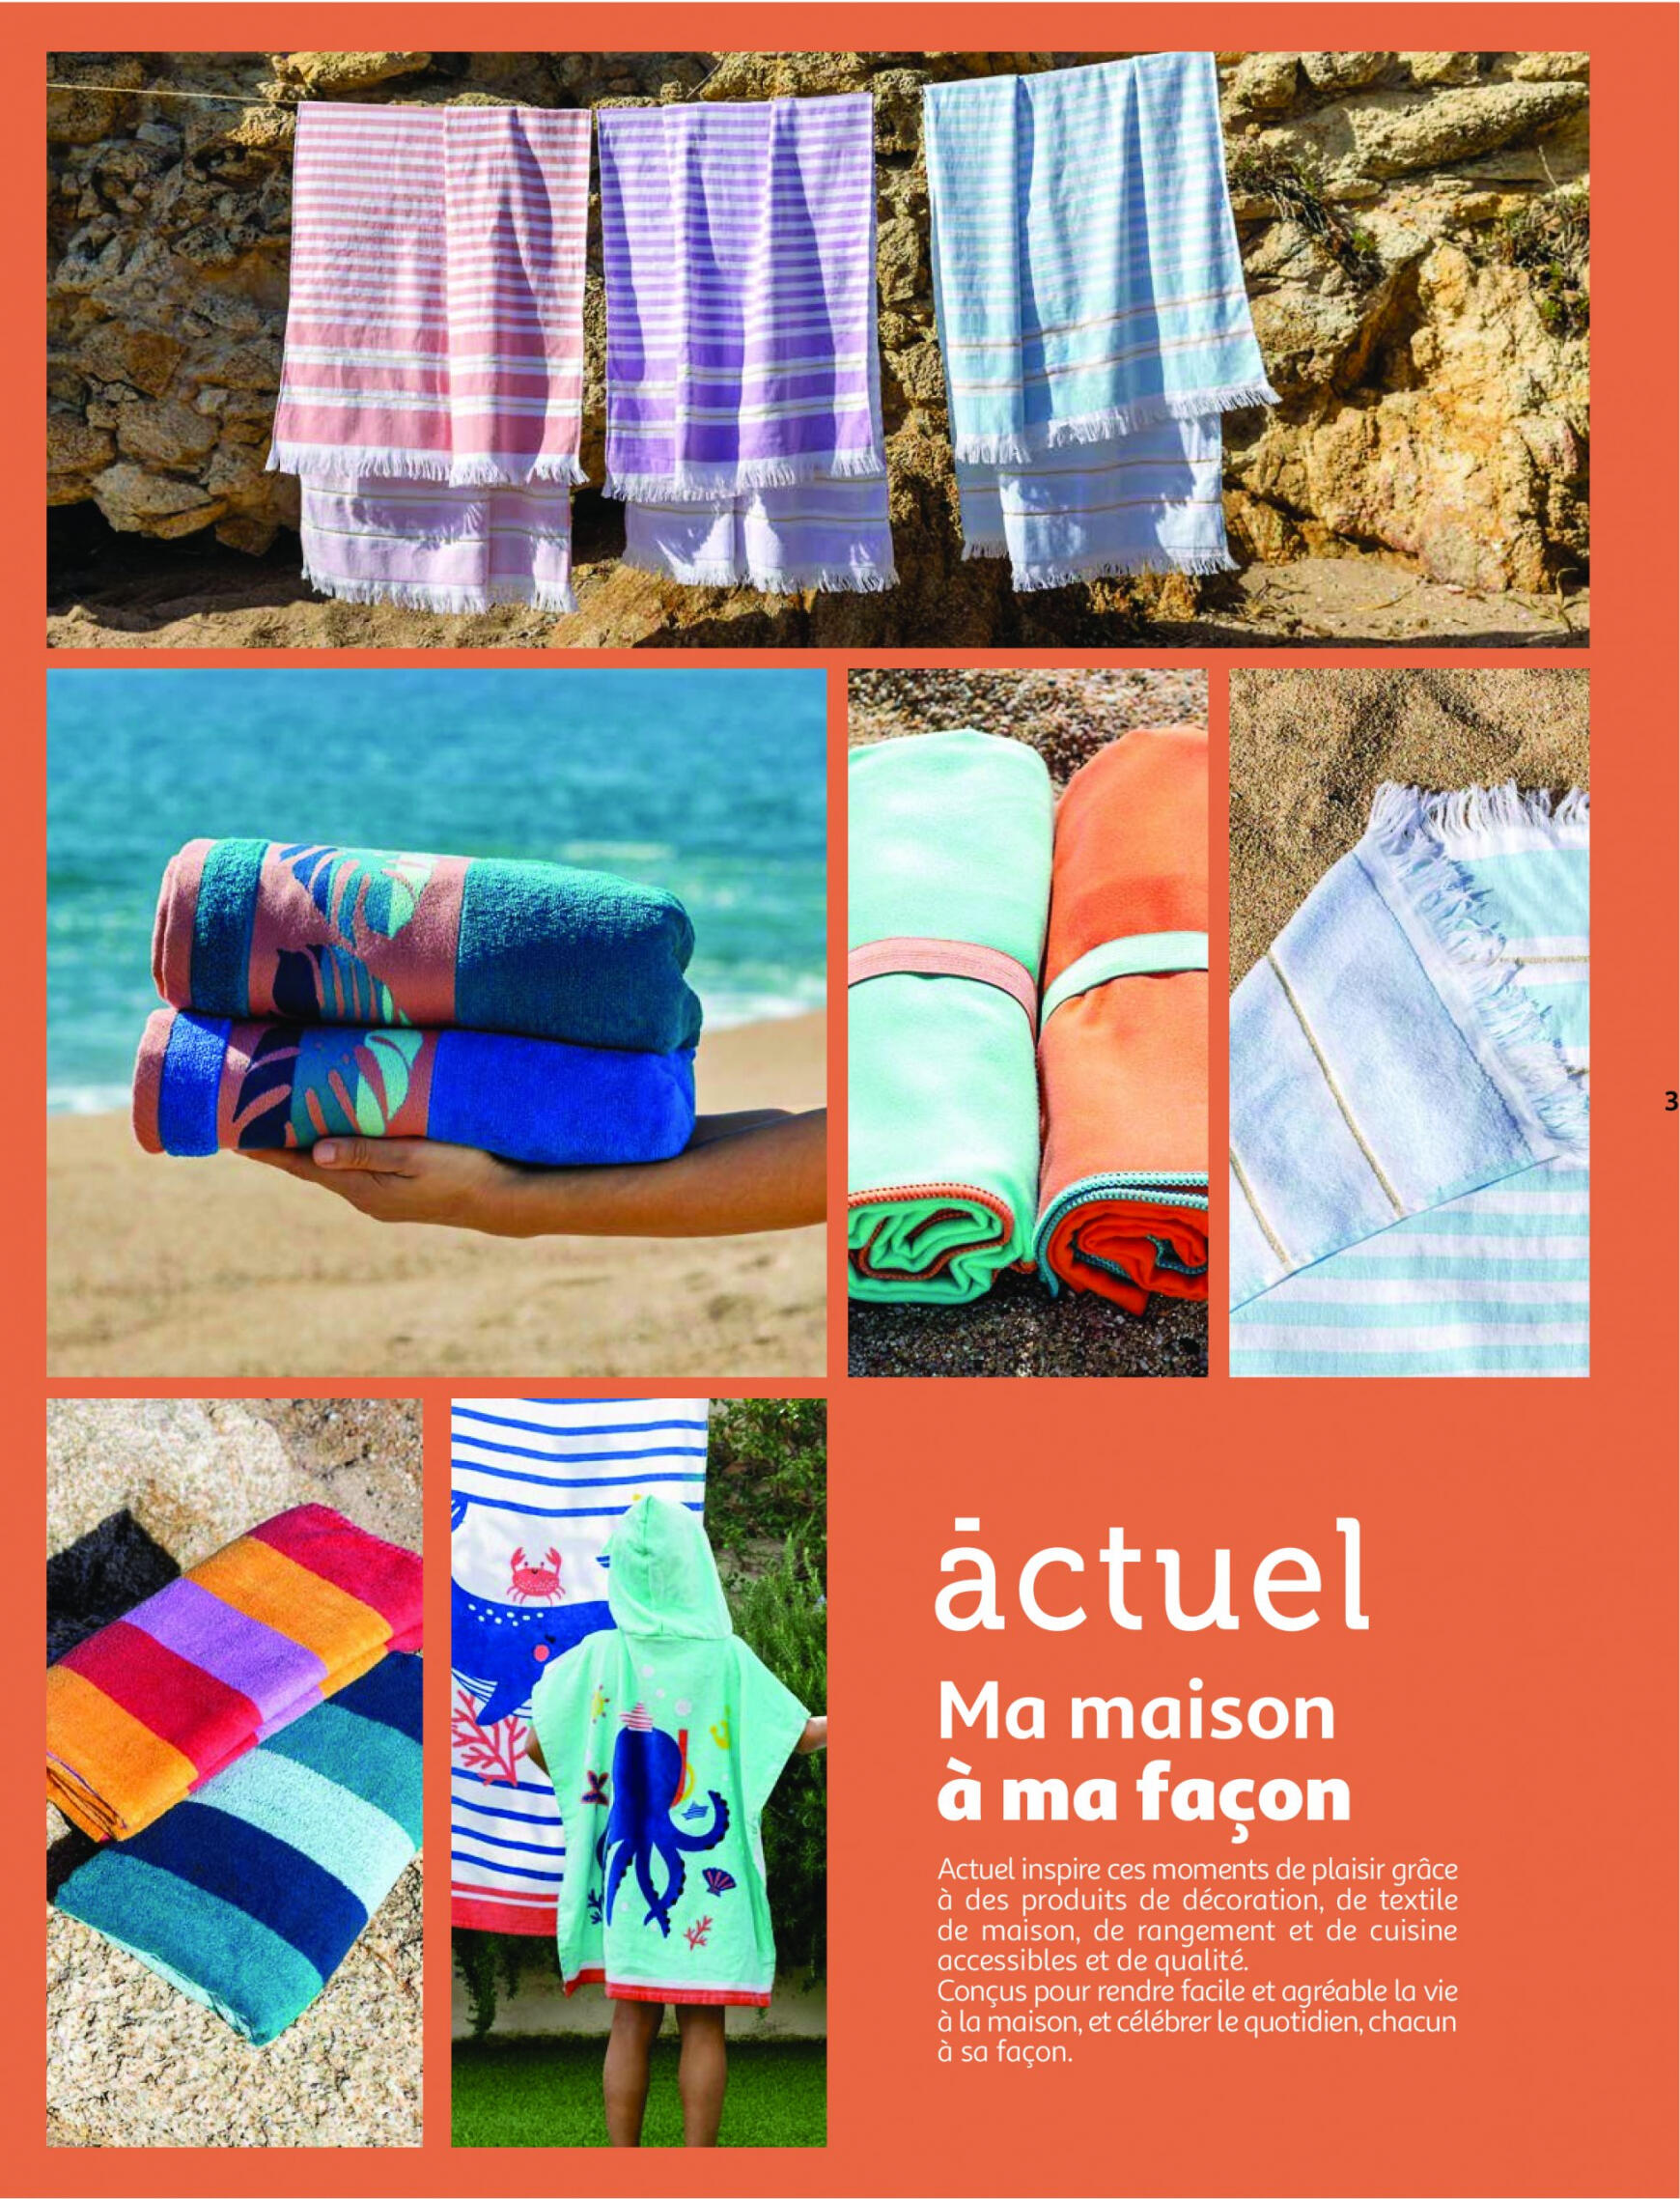 auchan - Auchan - Nos exclusivités Summer pour s'amuser tout l'été folder huidig 14.05. - 15.06. - page: 3